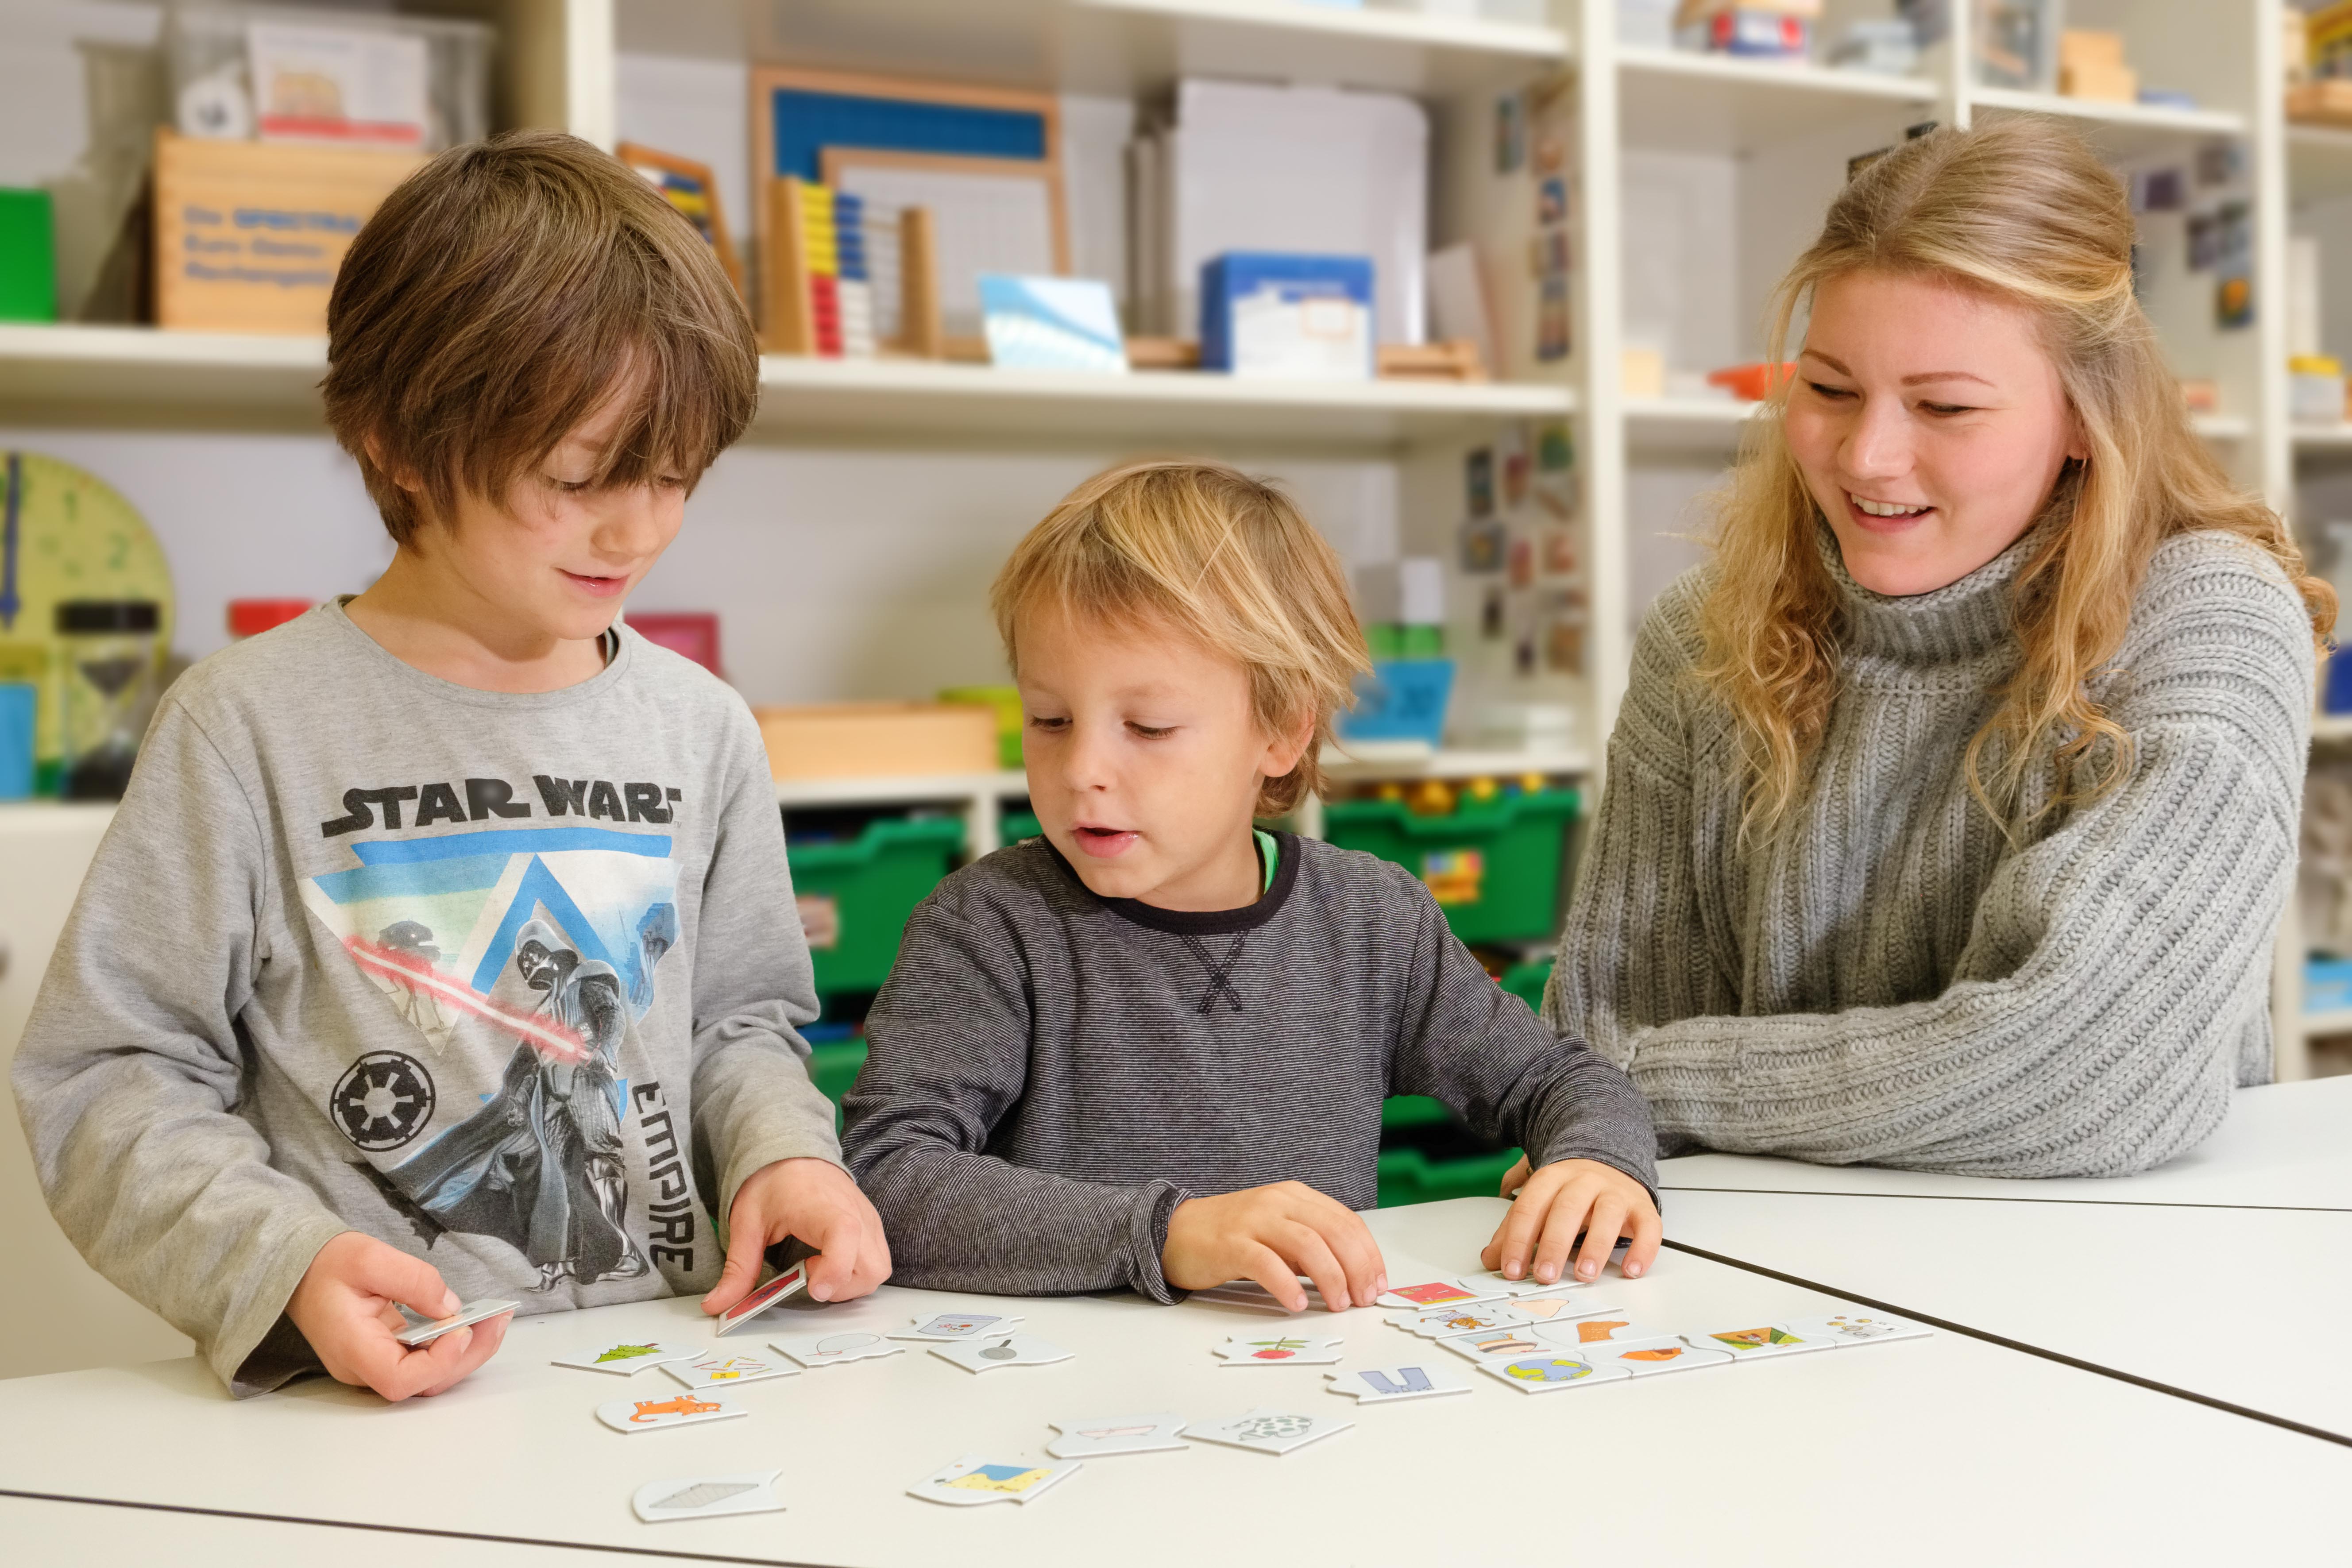 StartTrainerin bei der Arbeit mit zwei Schülern an einer Leipziger Grundschule